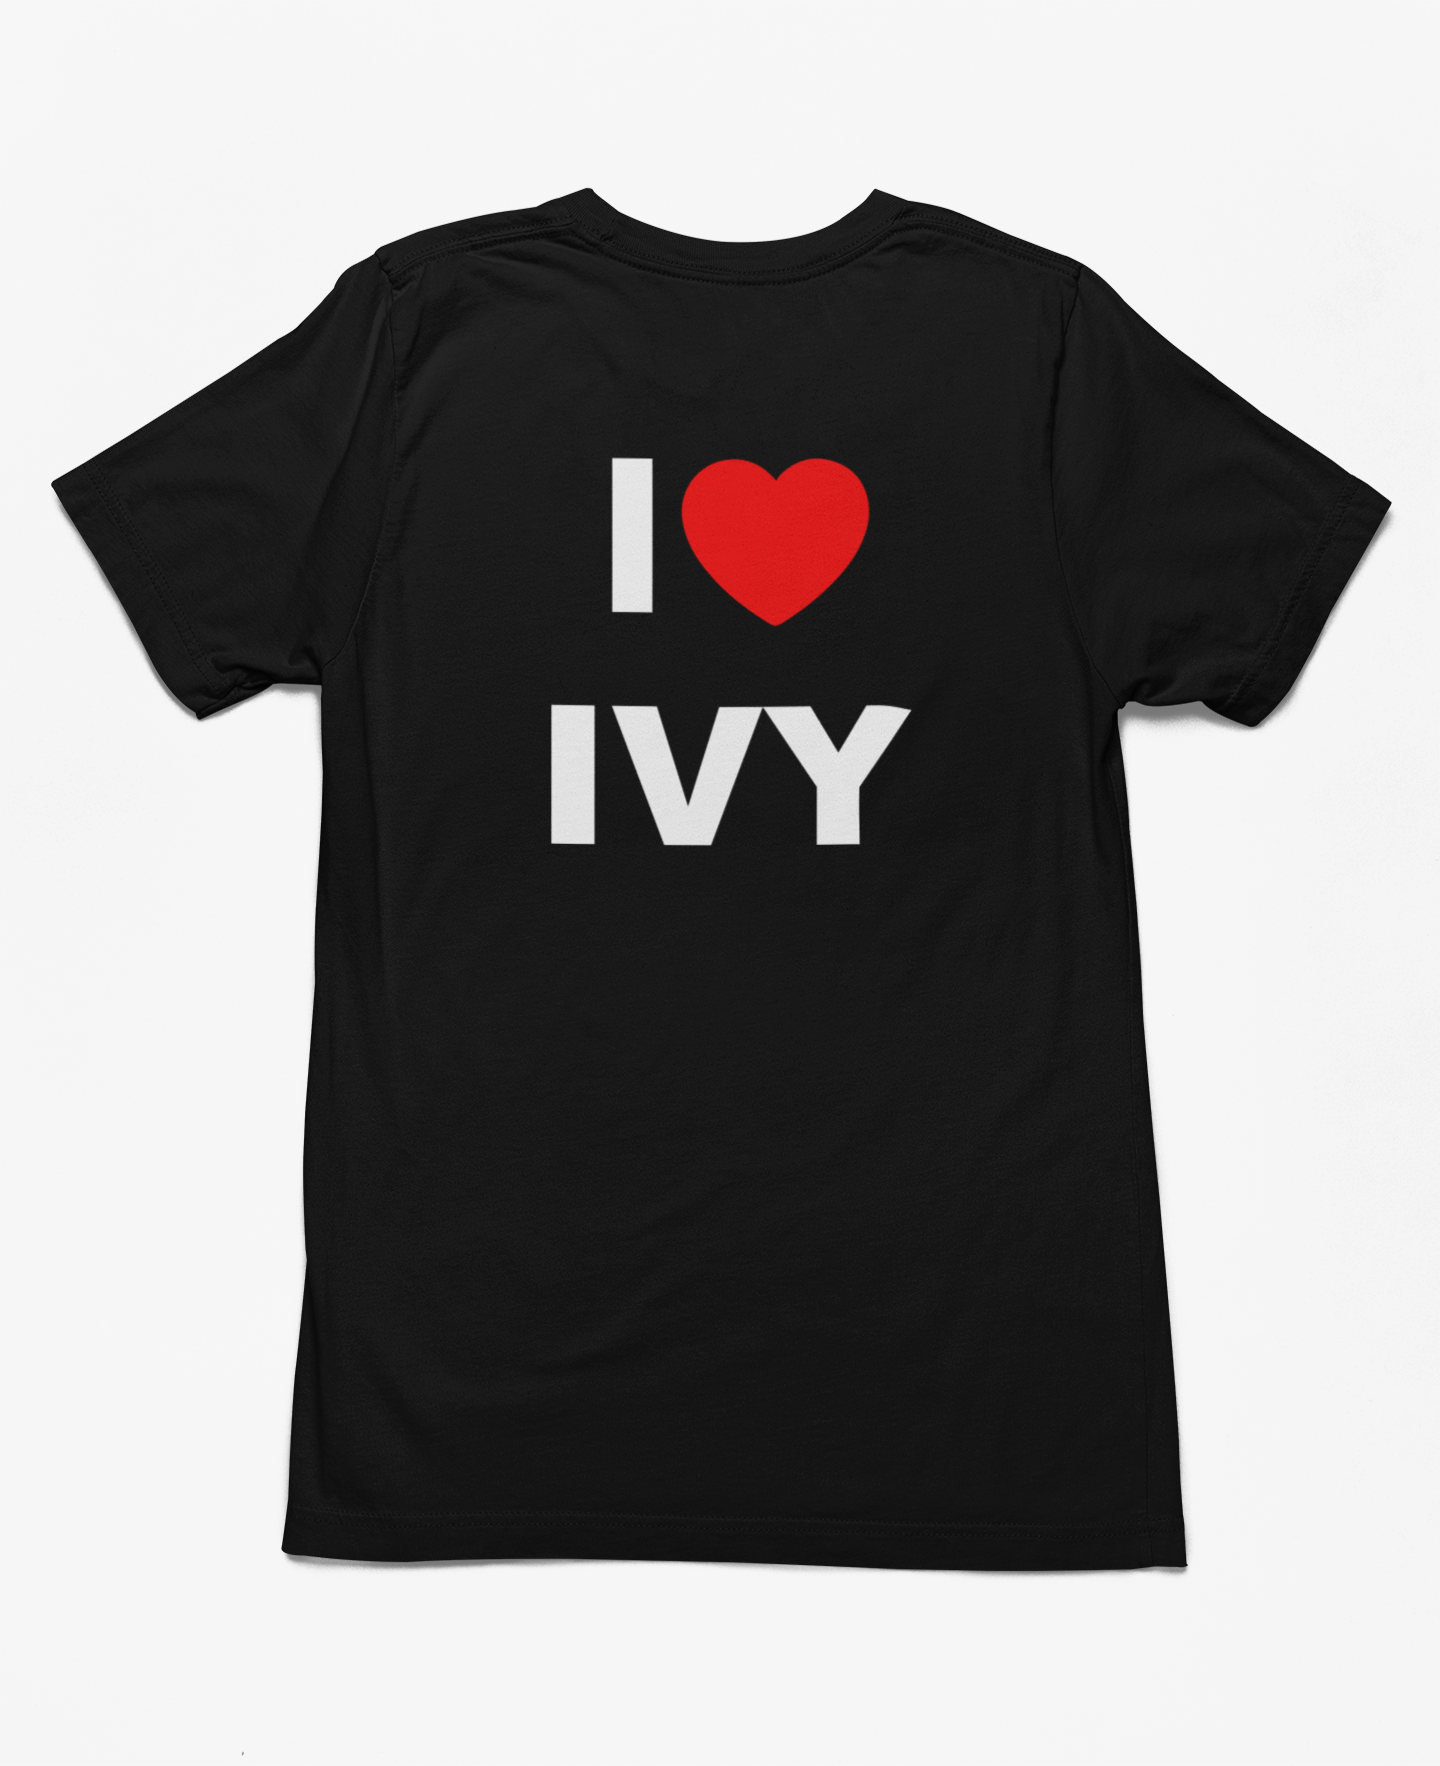 I Love IVY - Shirt Man